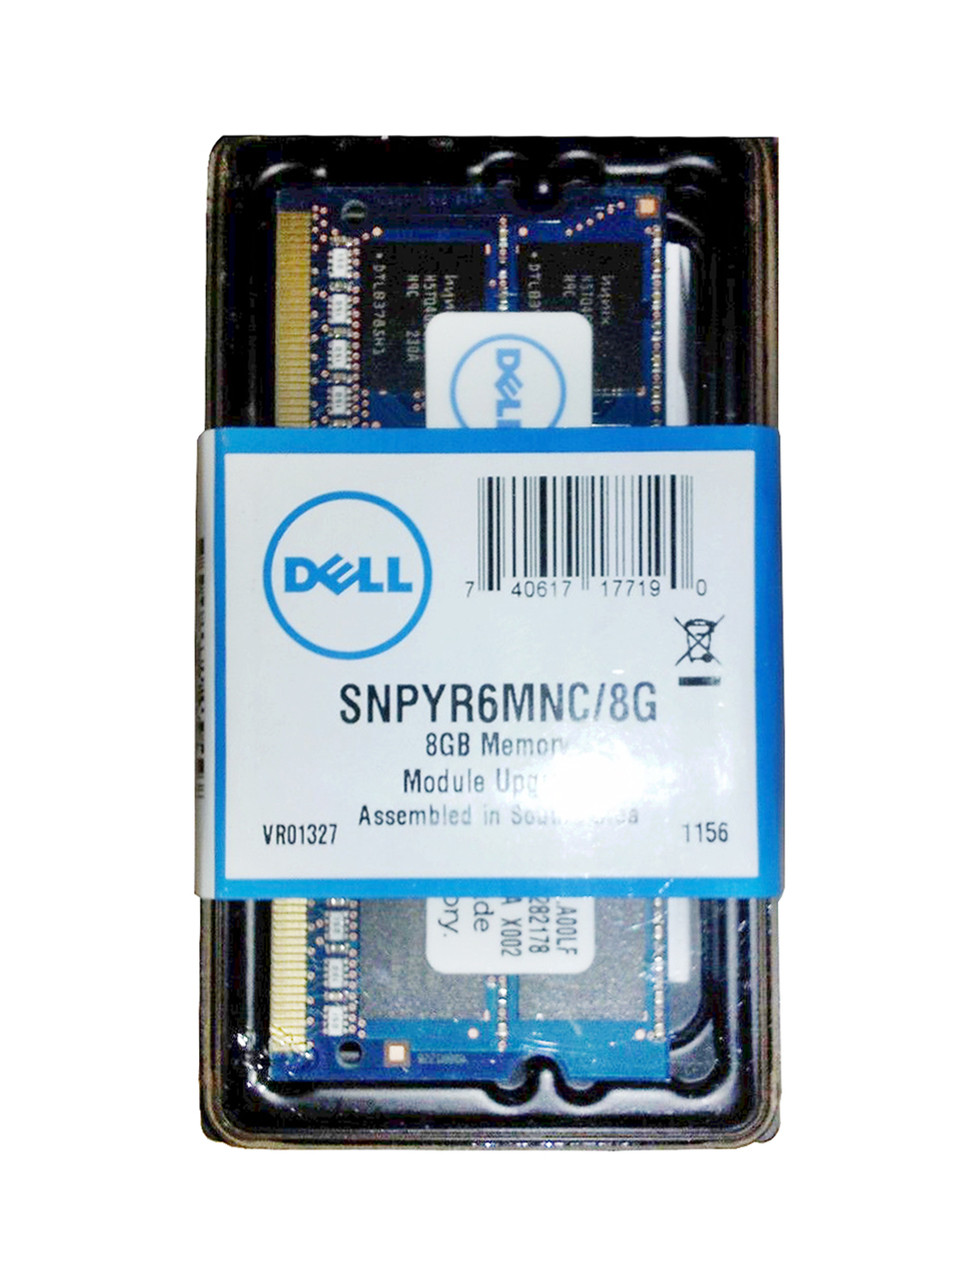 SNPYR6MNC/8G - Dell 8GB PC3-10600 DDR3-1333MHz non-ECC Unbuffered CL9 204-Pin SoDimm Dual Rank Memory Module for Precision Mobile Workstatio